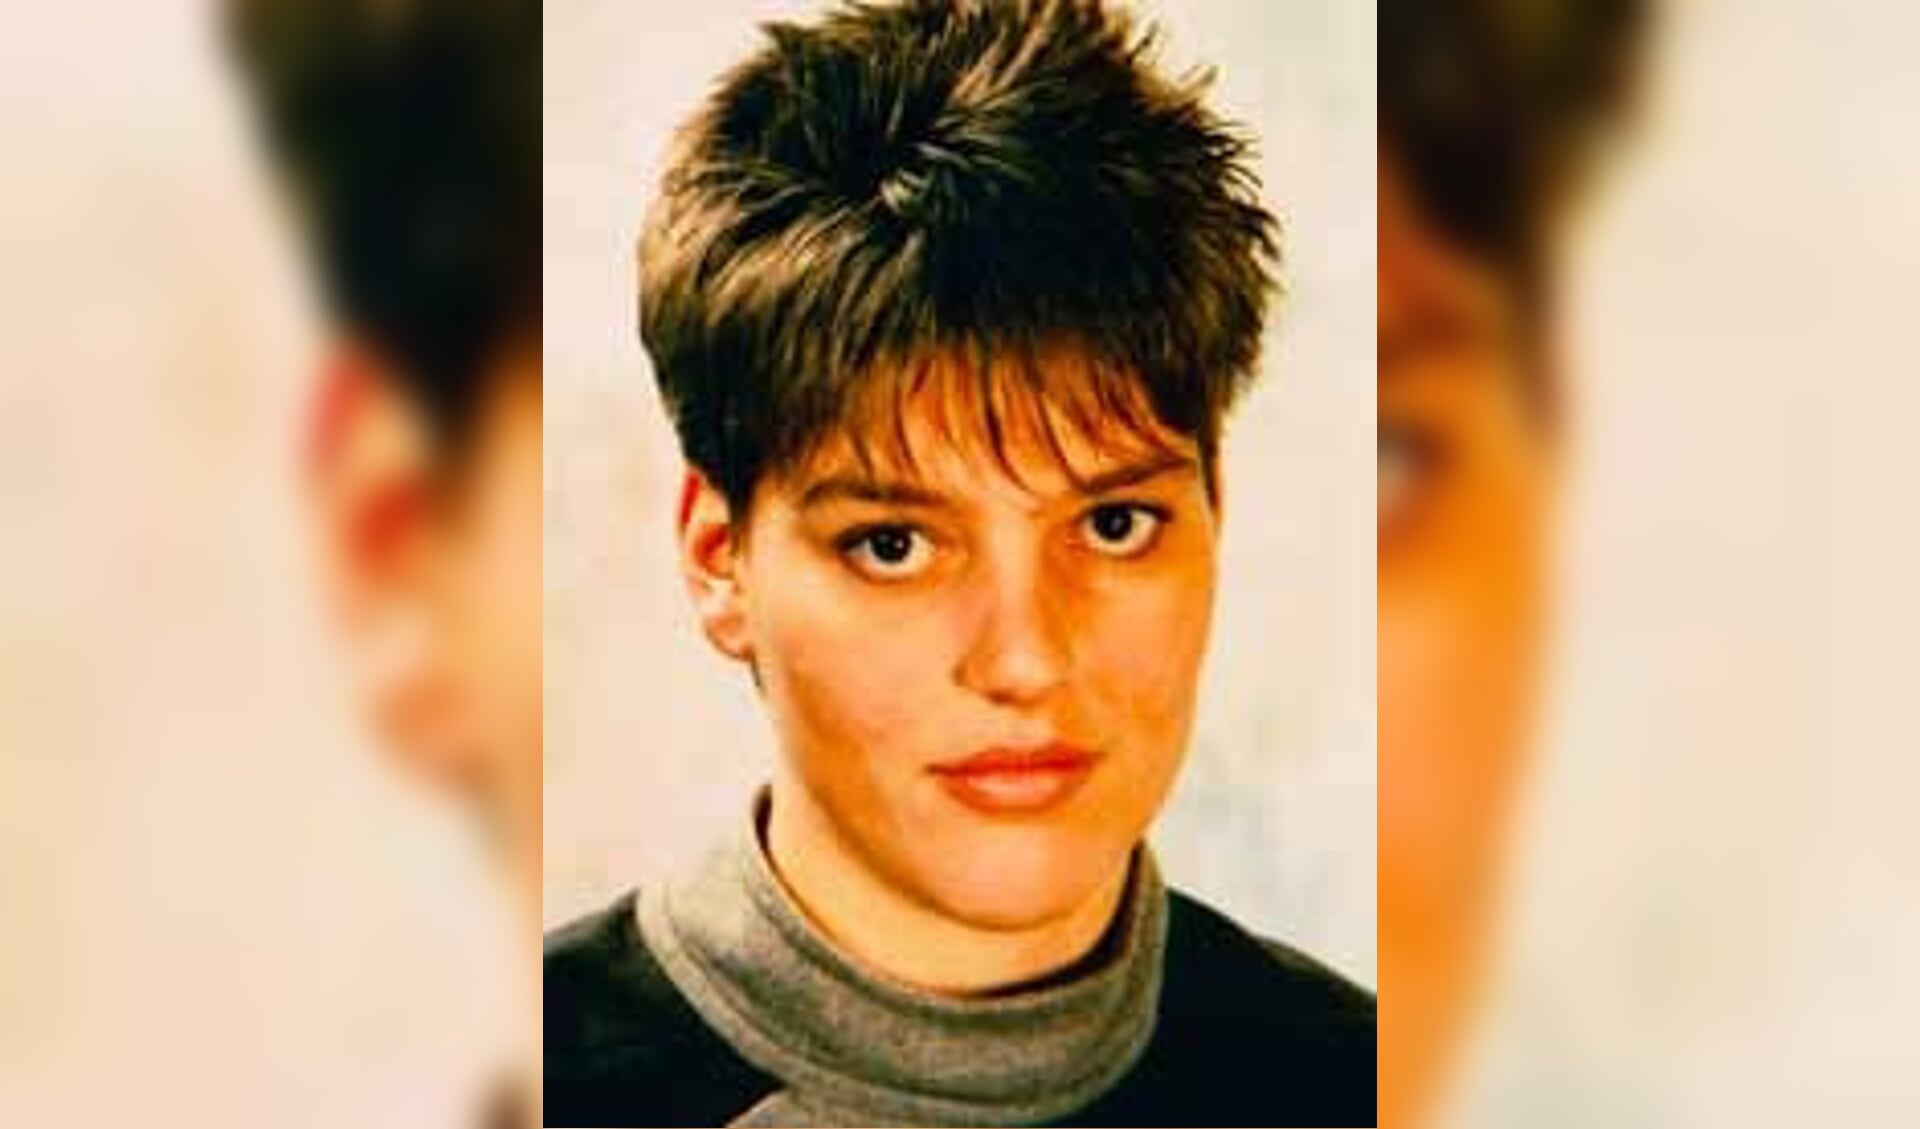 Ellen werd in 1989 dood gevonden in haar studentenkamer. 